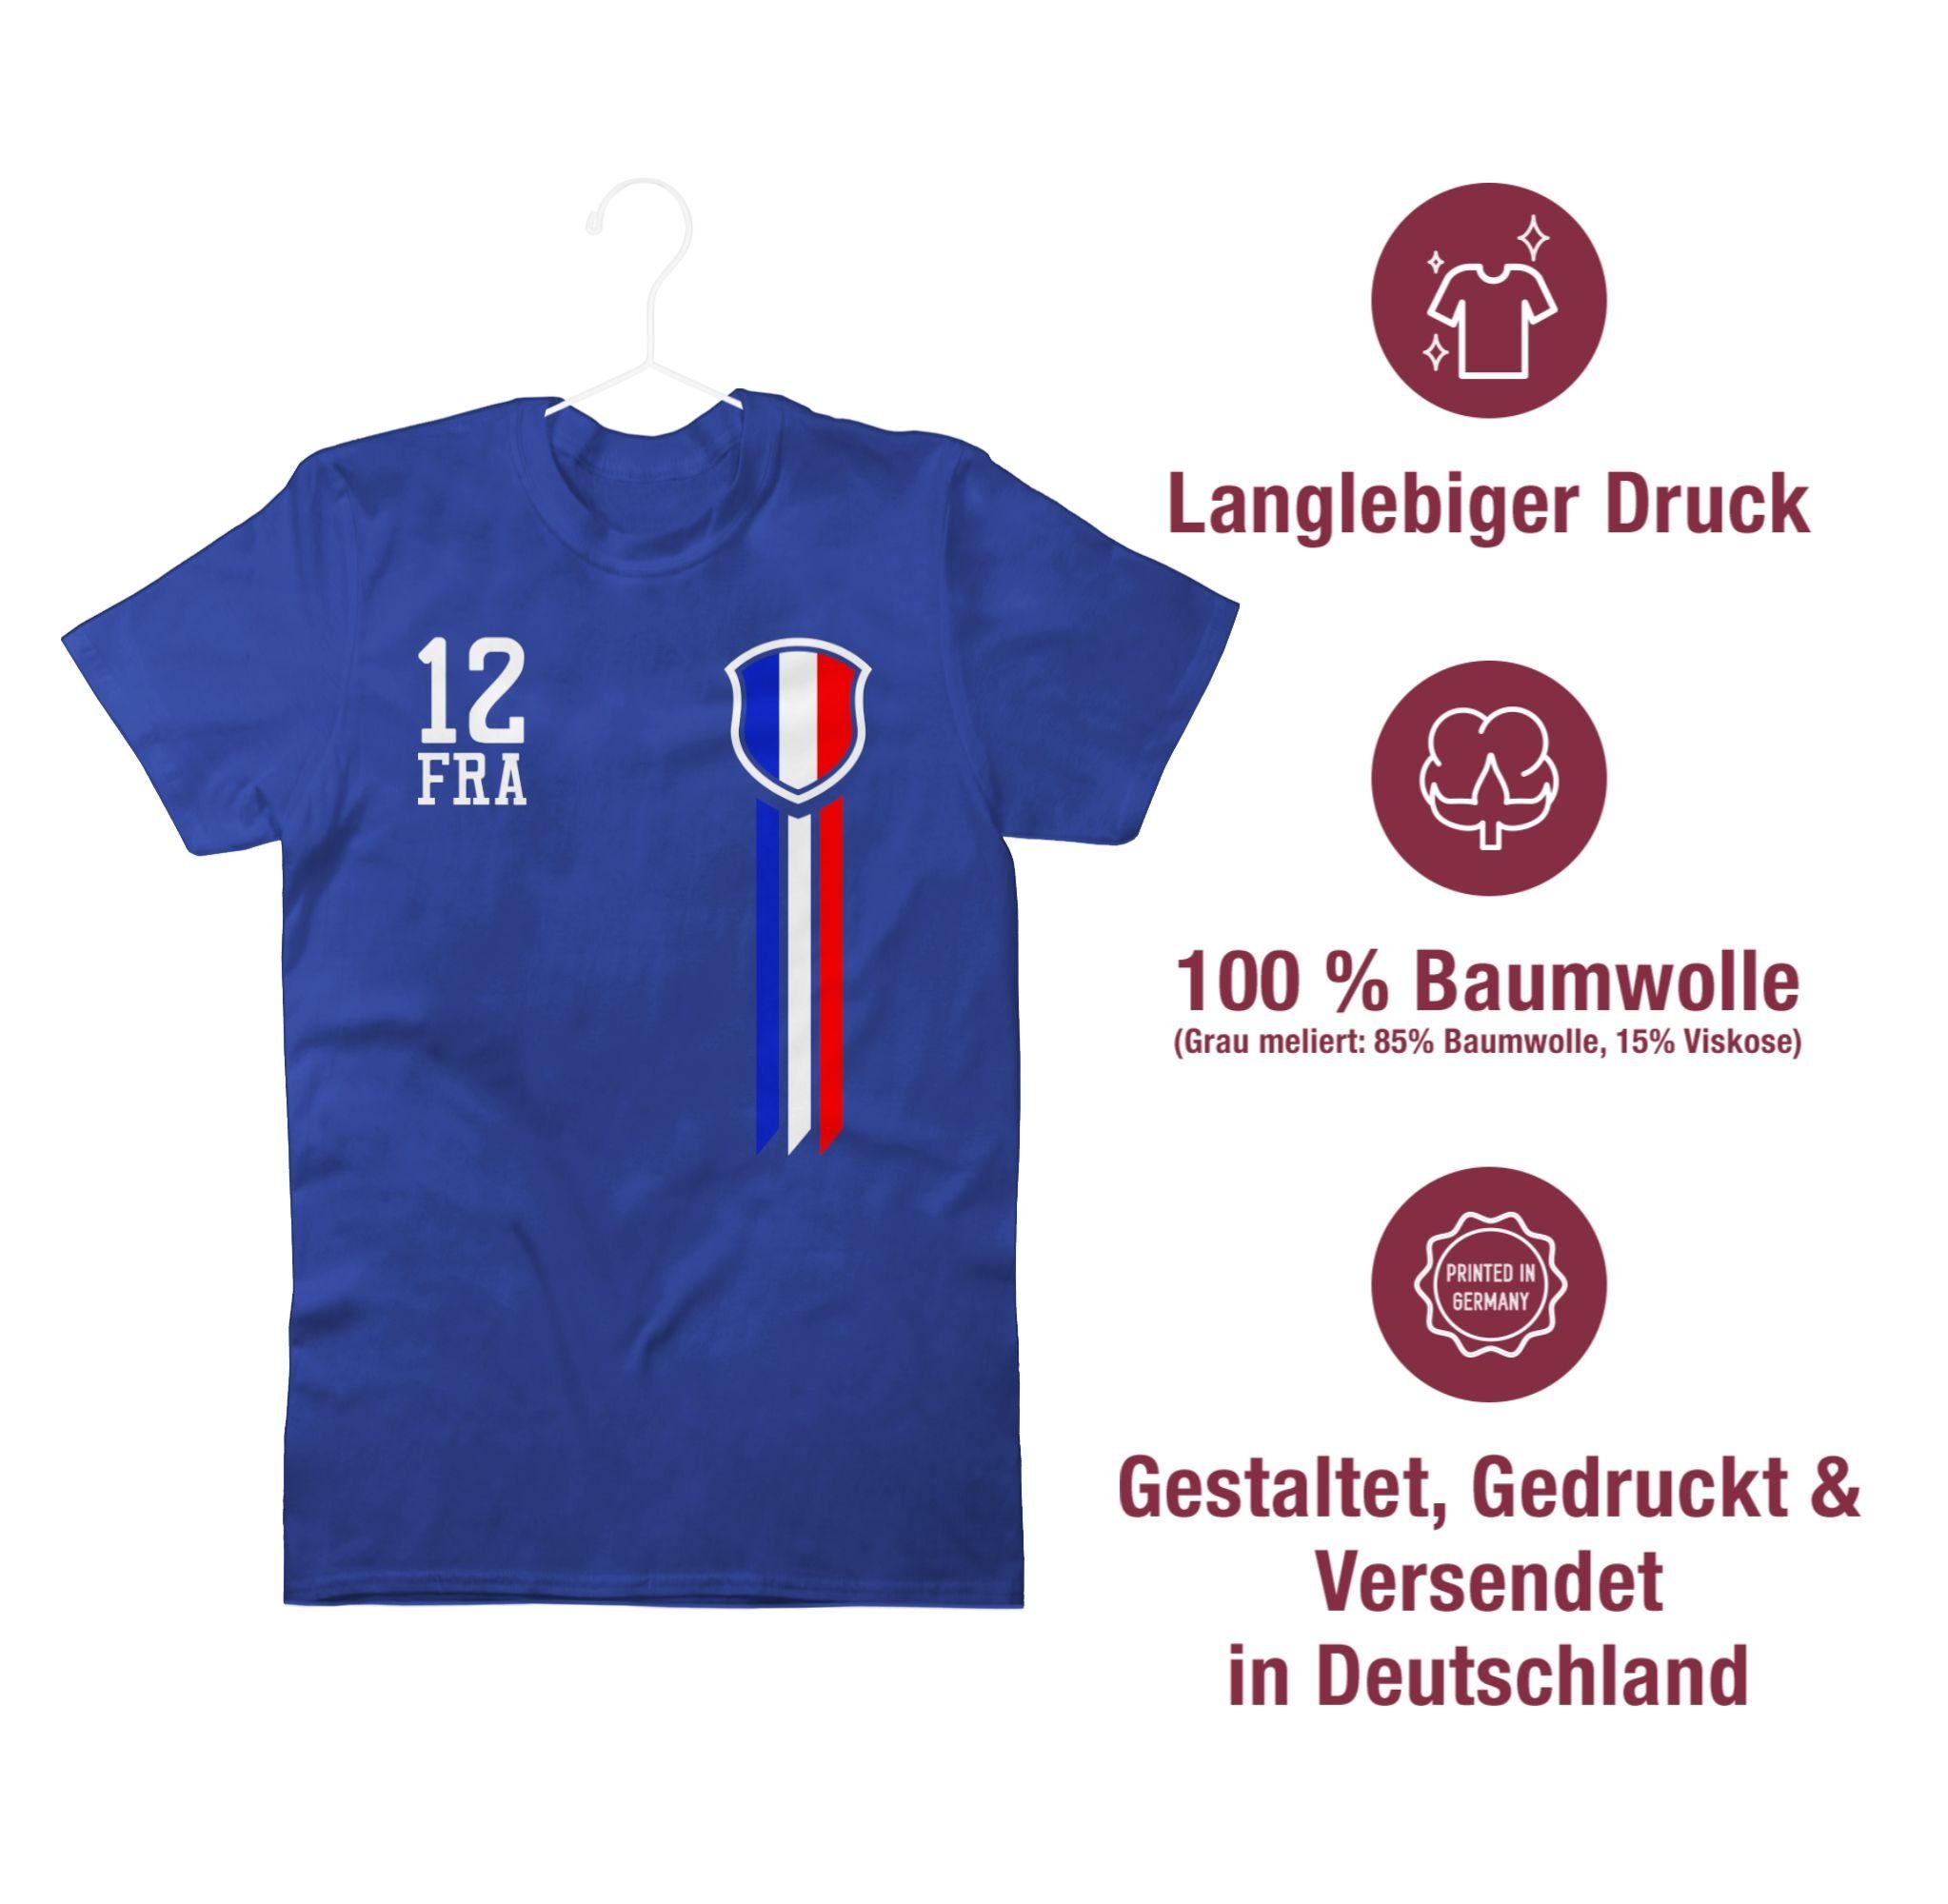 Shirtracer Frankreich Mann 2 Fanshirt T-Shirt Royalblau 2024 12. Fussball EM